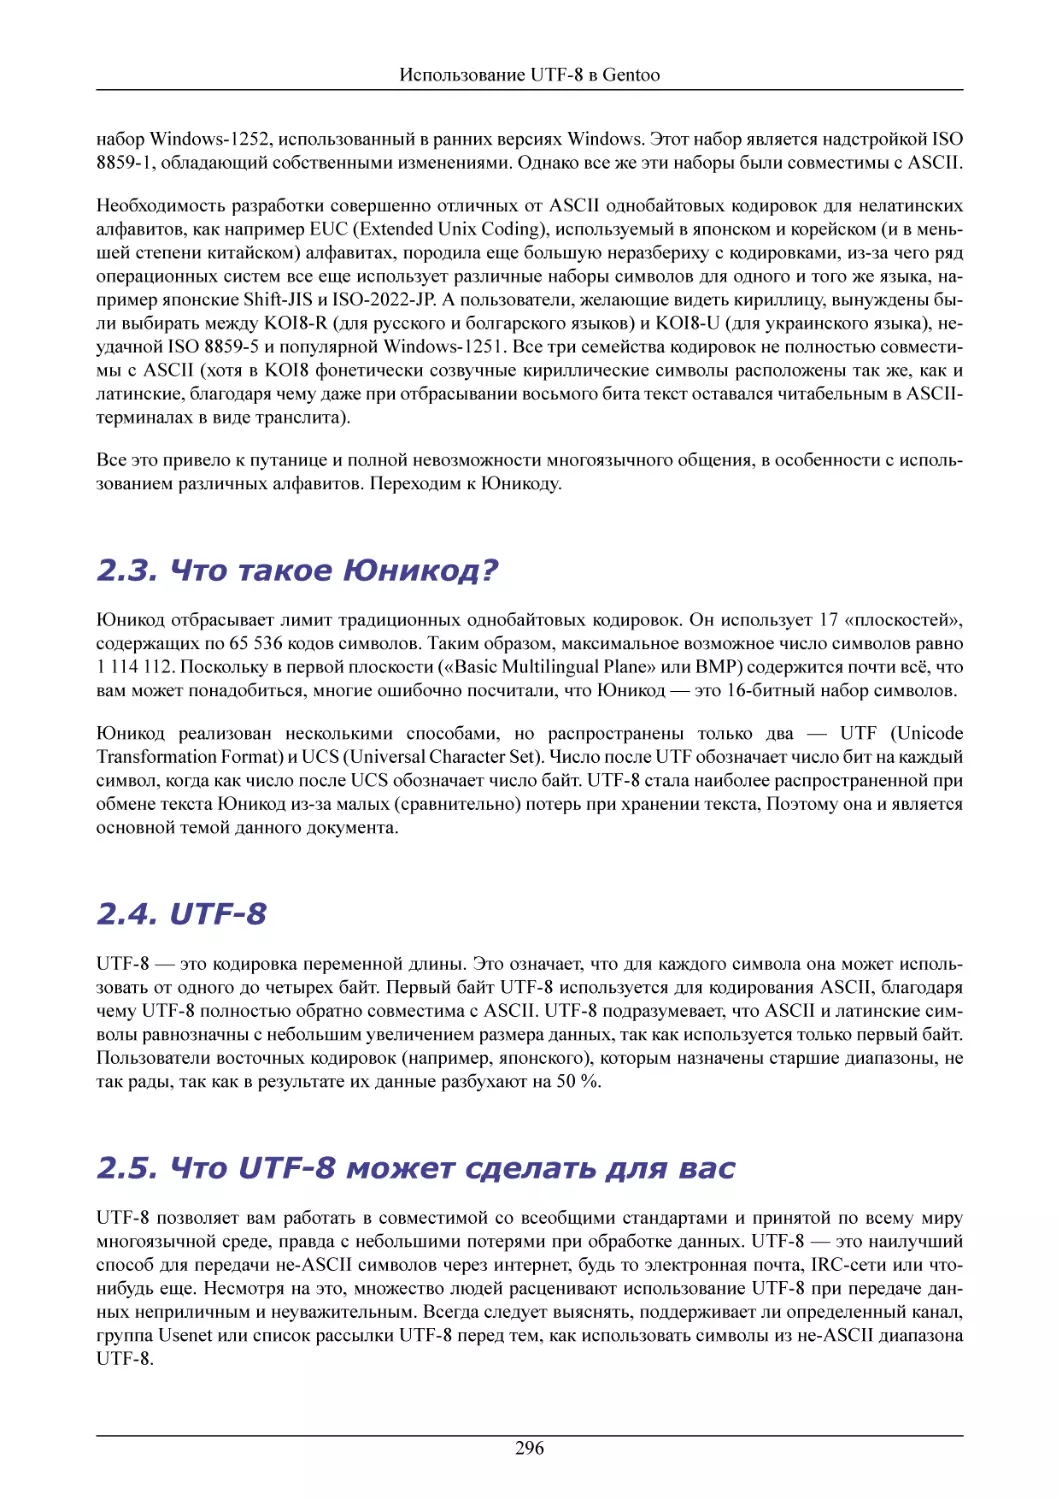 Что такое Юникод?
UTF-8
Что UTF-8 может сделать для вас